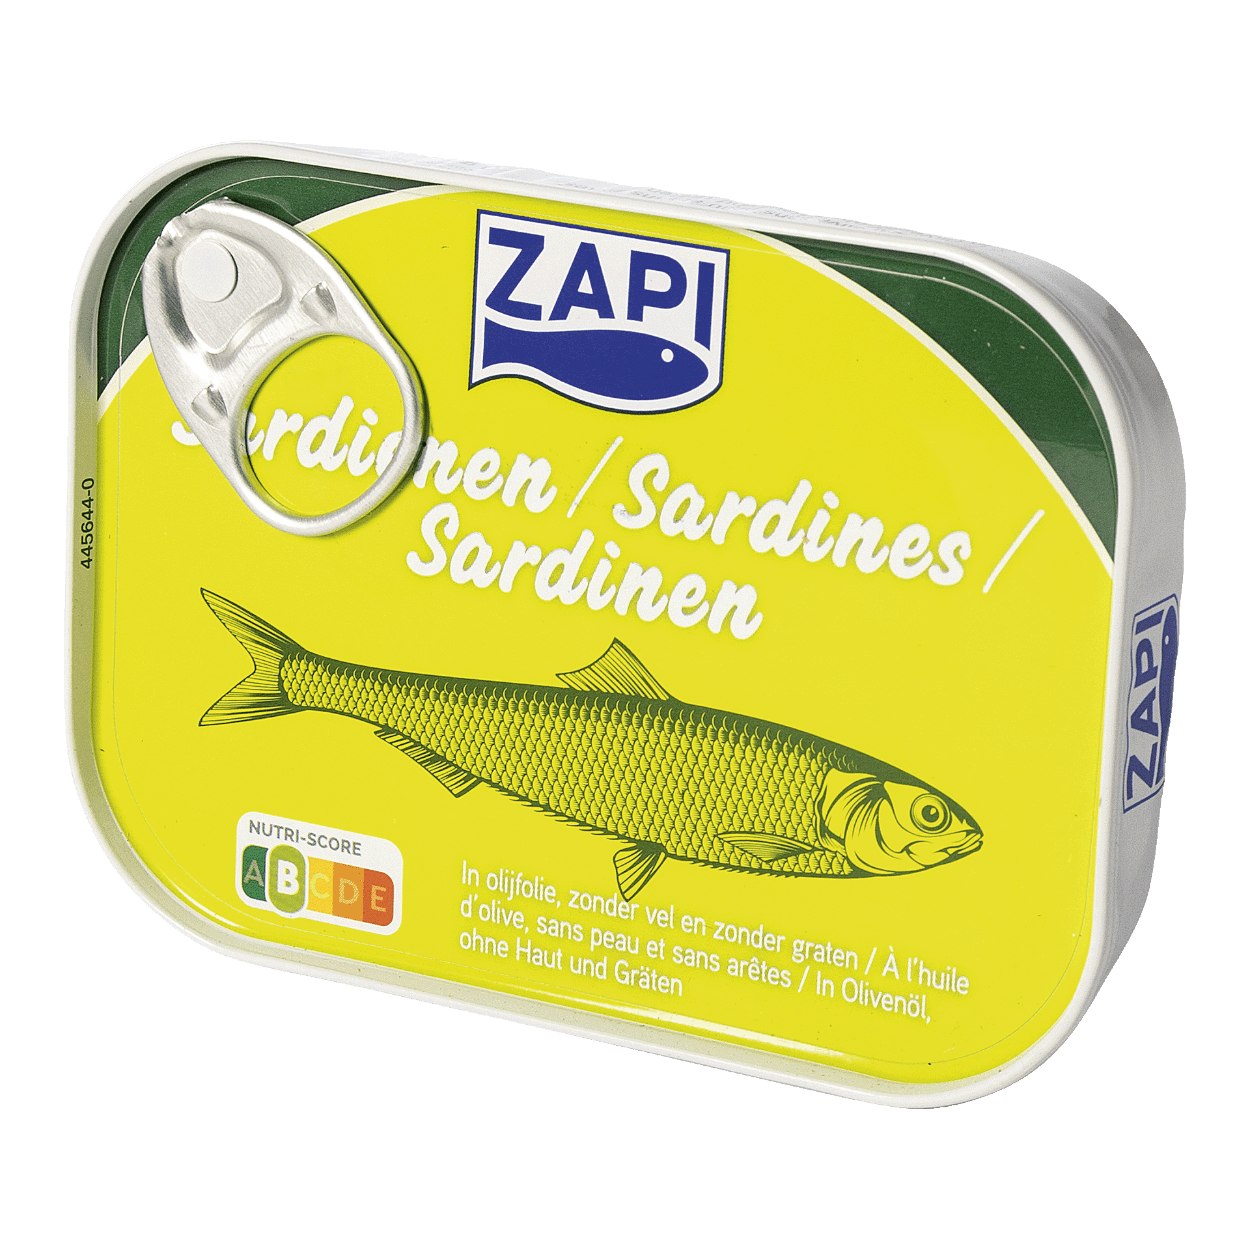 Bijna Geboorte geven beoefenaar ZAPI® Sardines in olijfolie kopen bij ALDI België